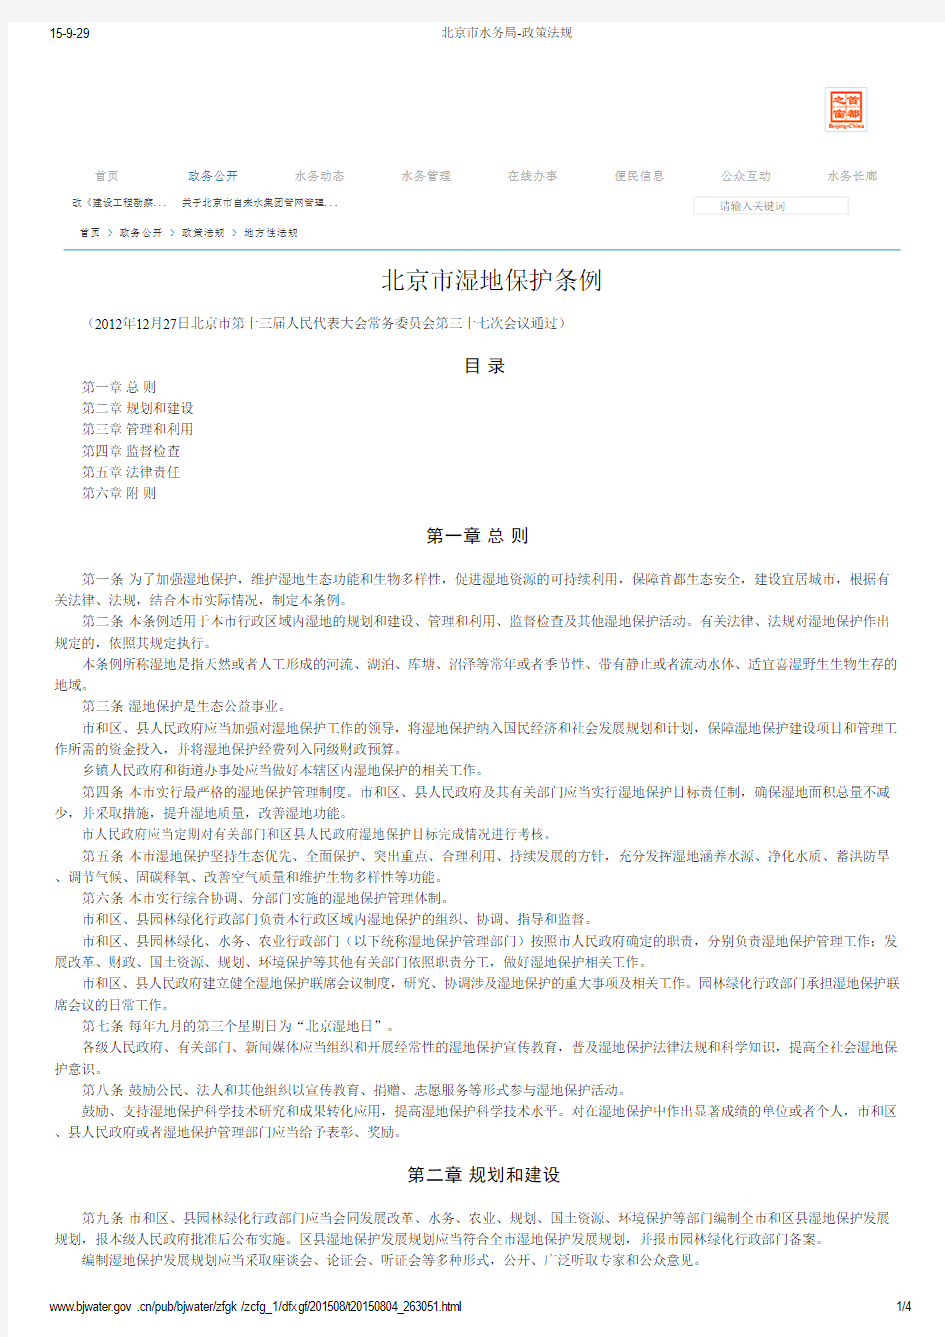 (条例规定)北京市湿地保护条例(北京市水务局)